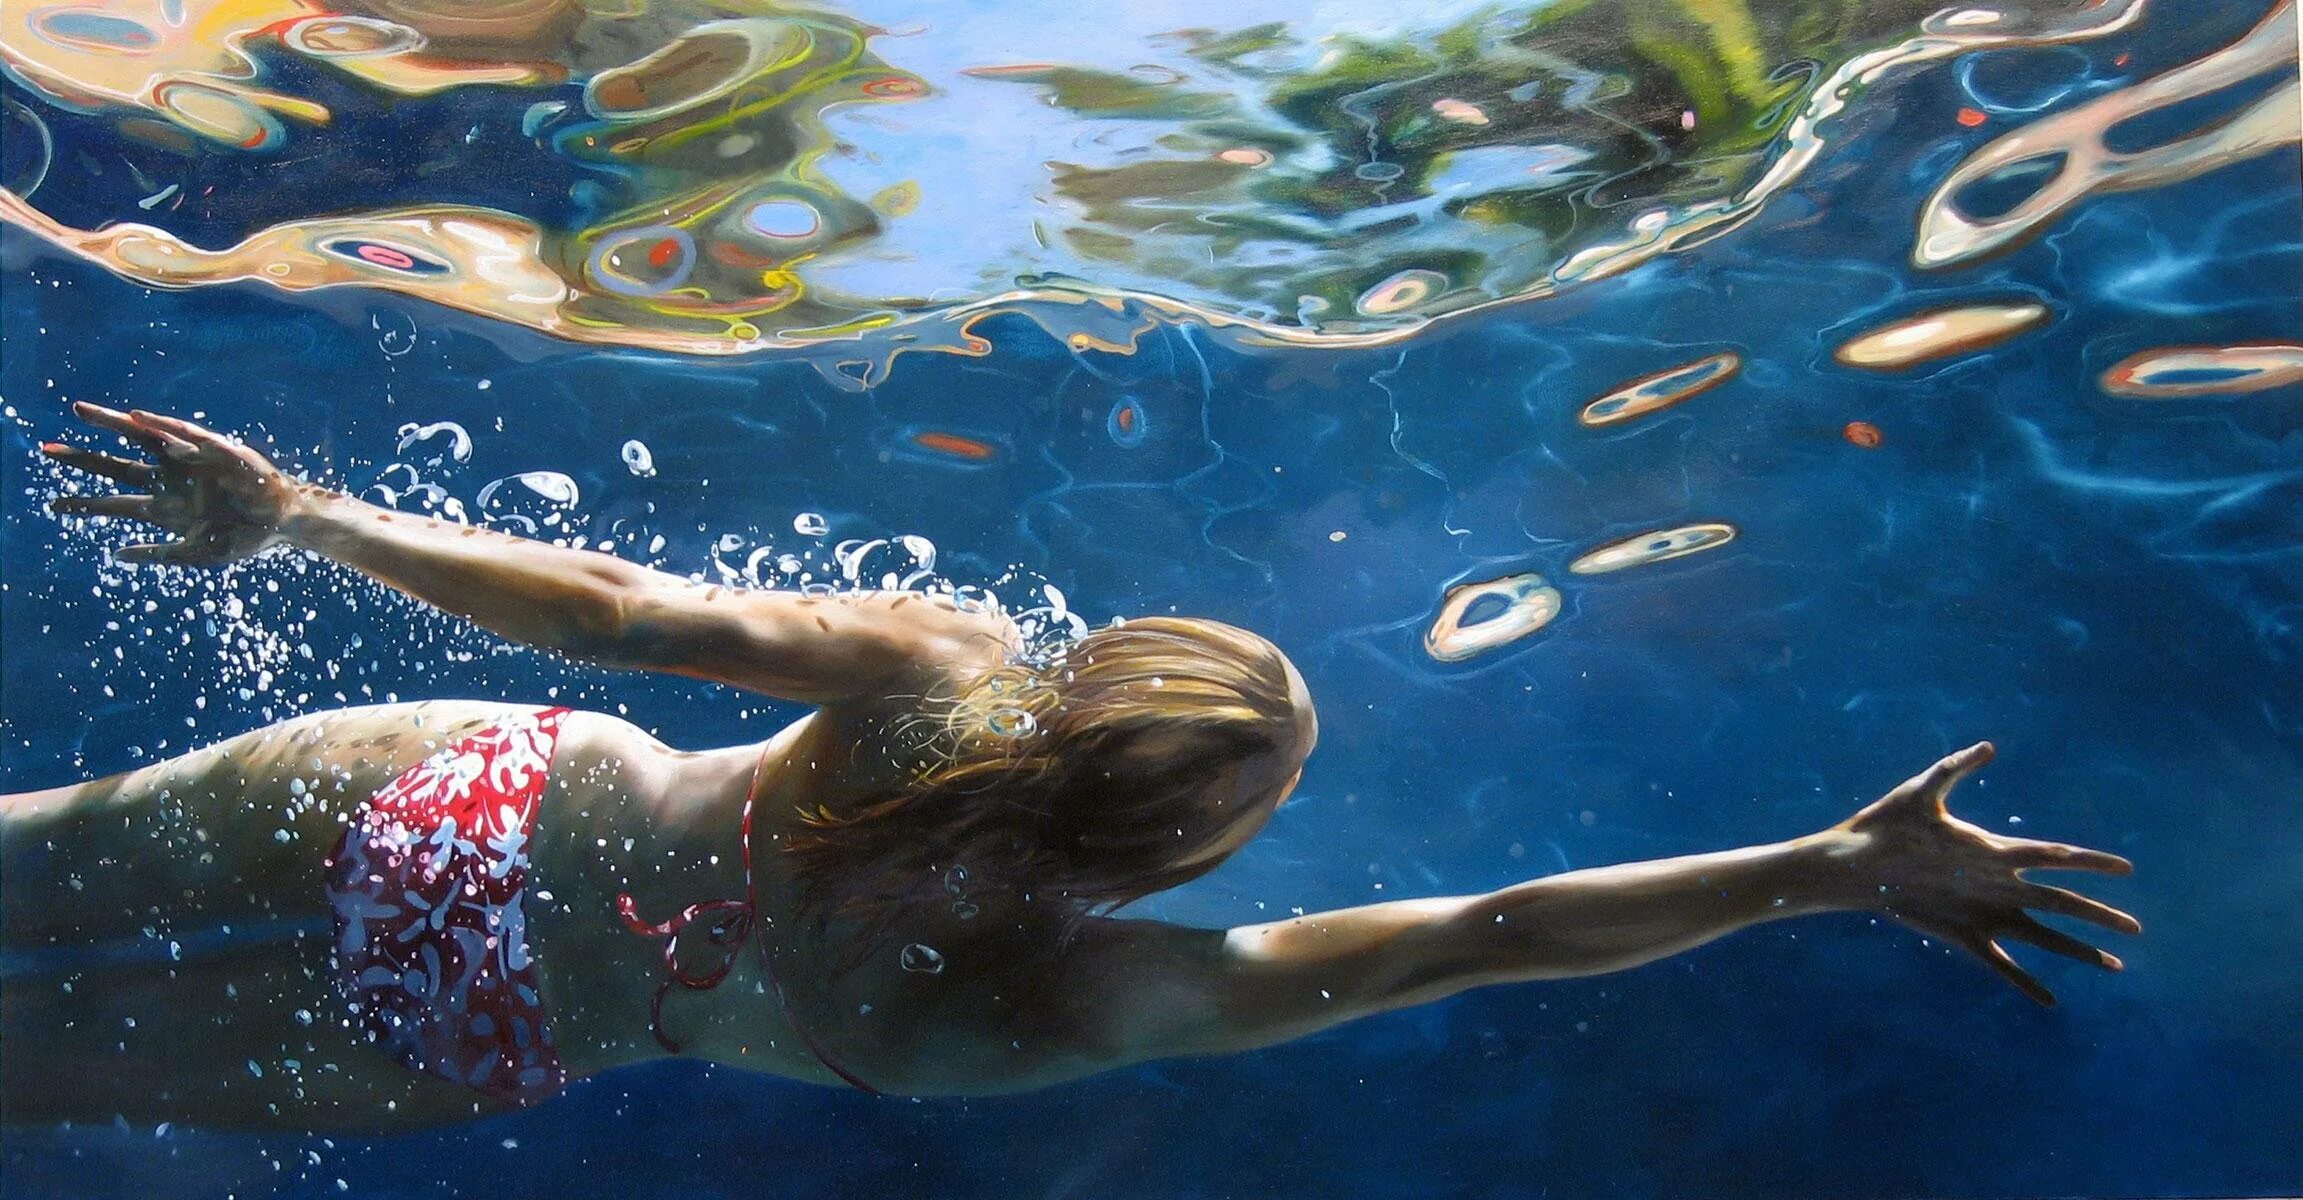 Металл плавает в воде. Реалистическая живопись Eric Zener.